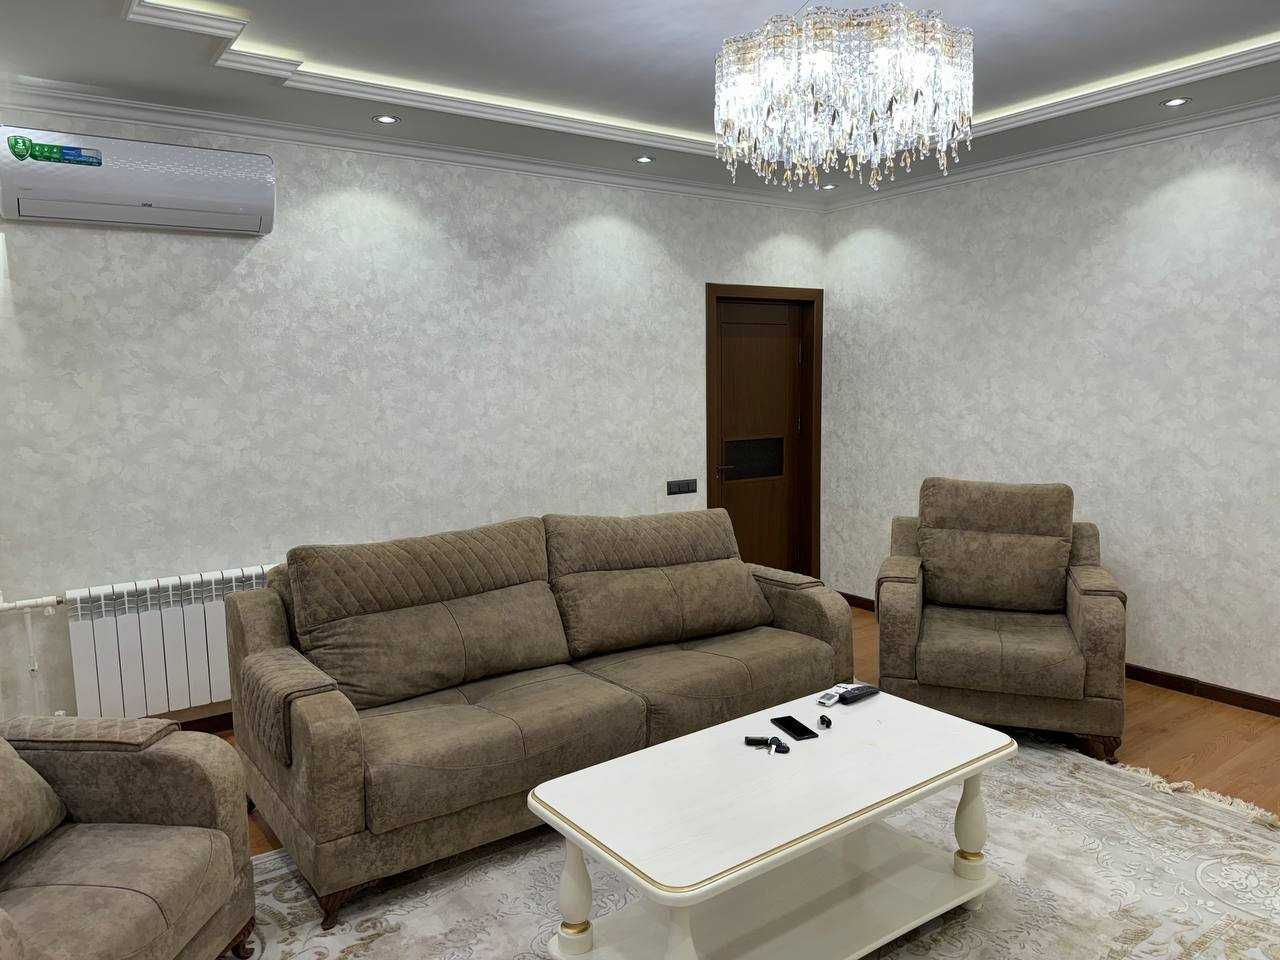 Продается квартира на Новомосковской для молодой семьи или под бизнес!